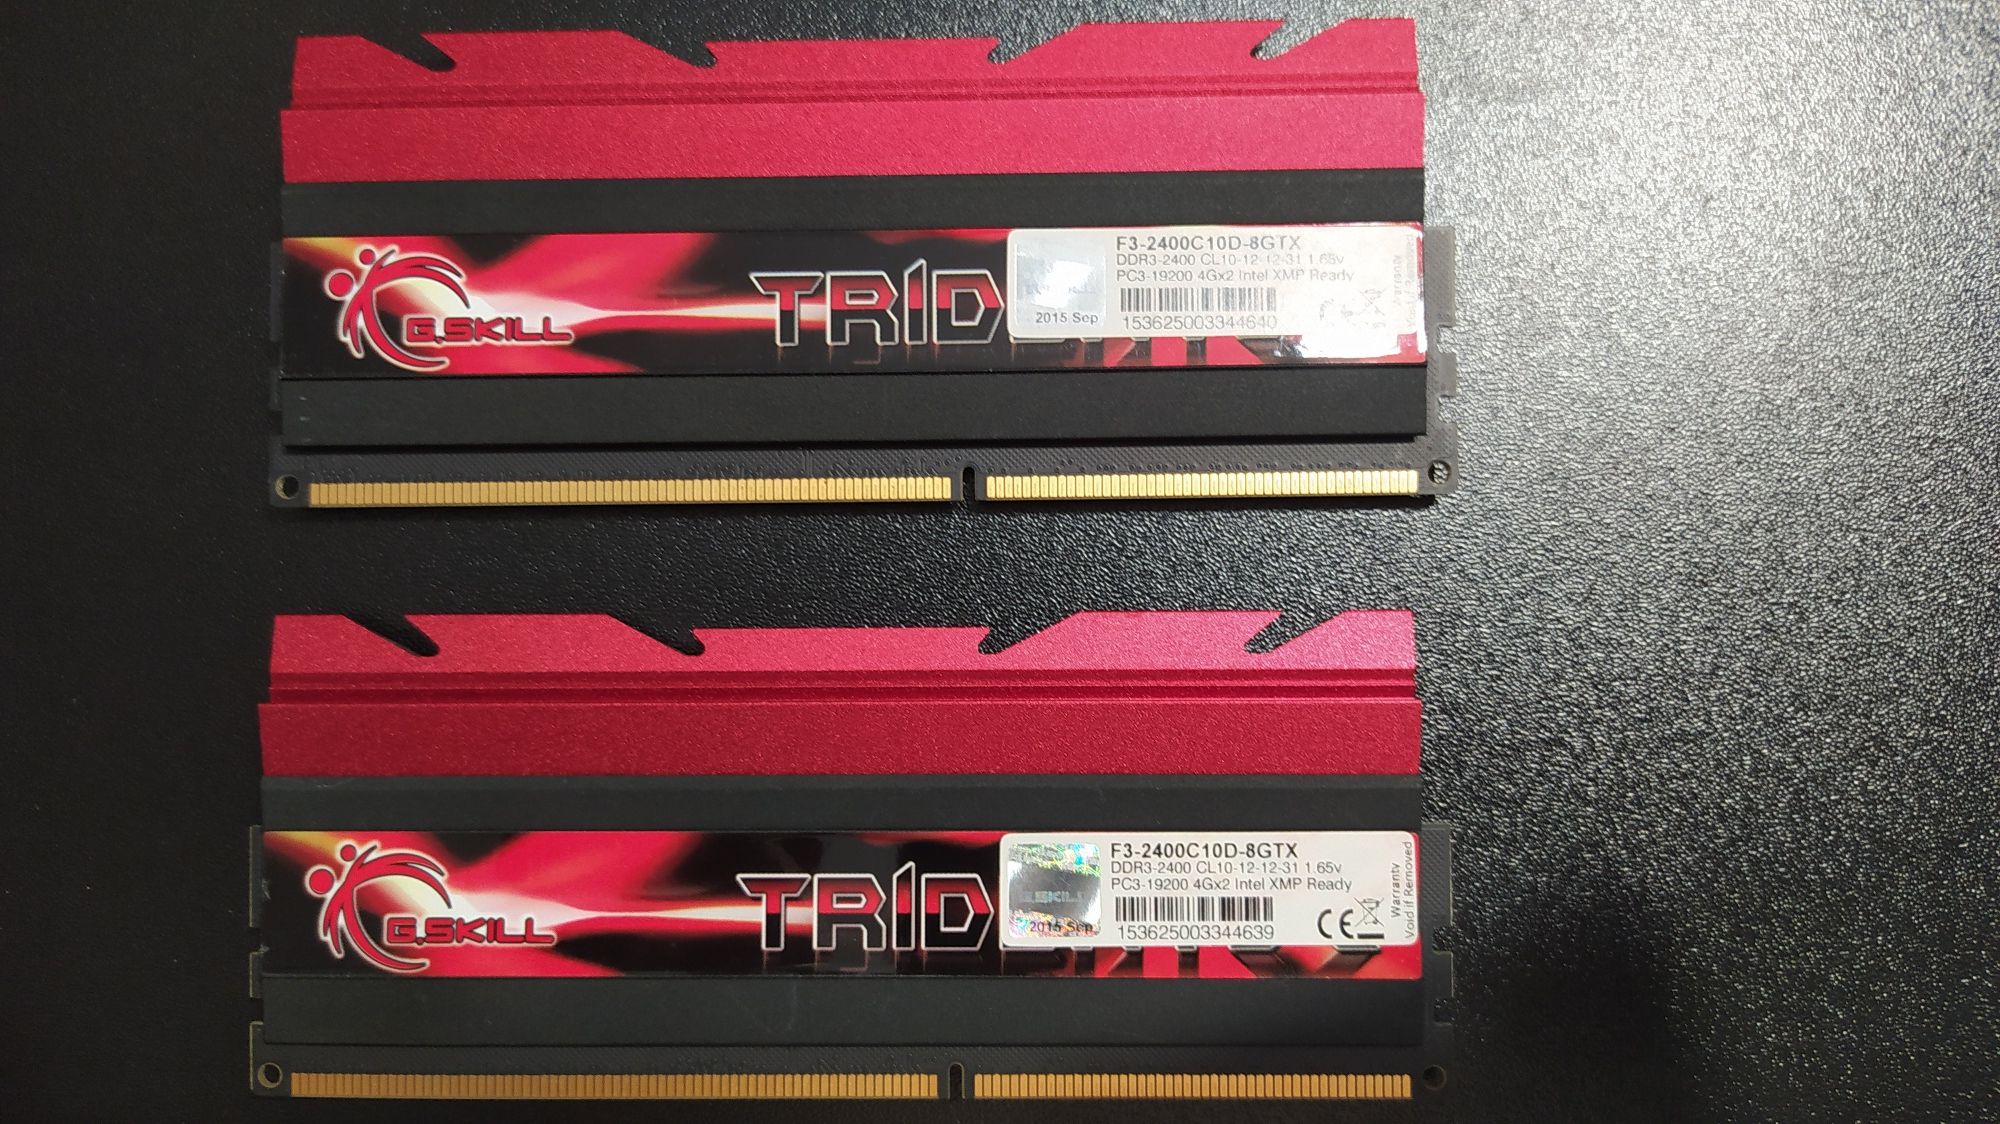 TridentX 4Gx2 DDR3